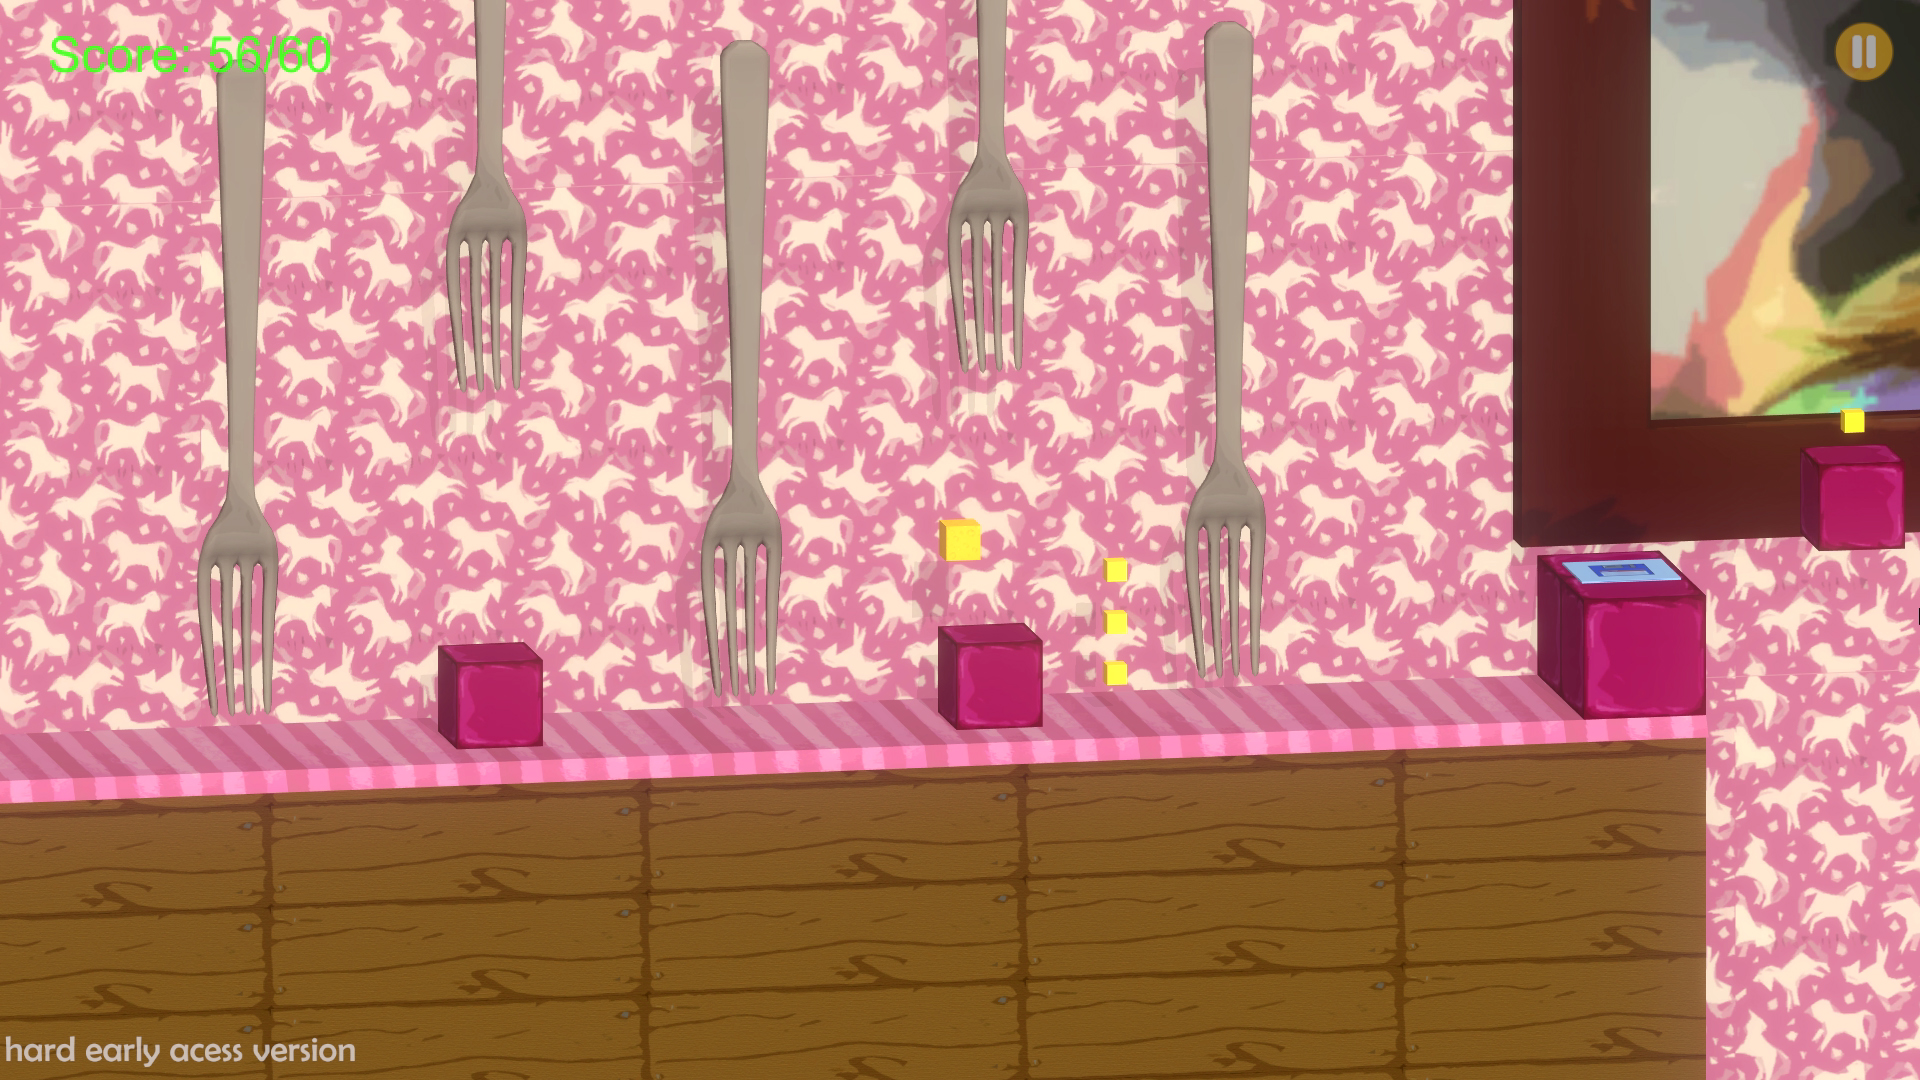 A Cheesy Game screenshot